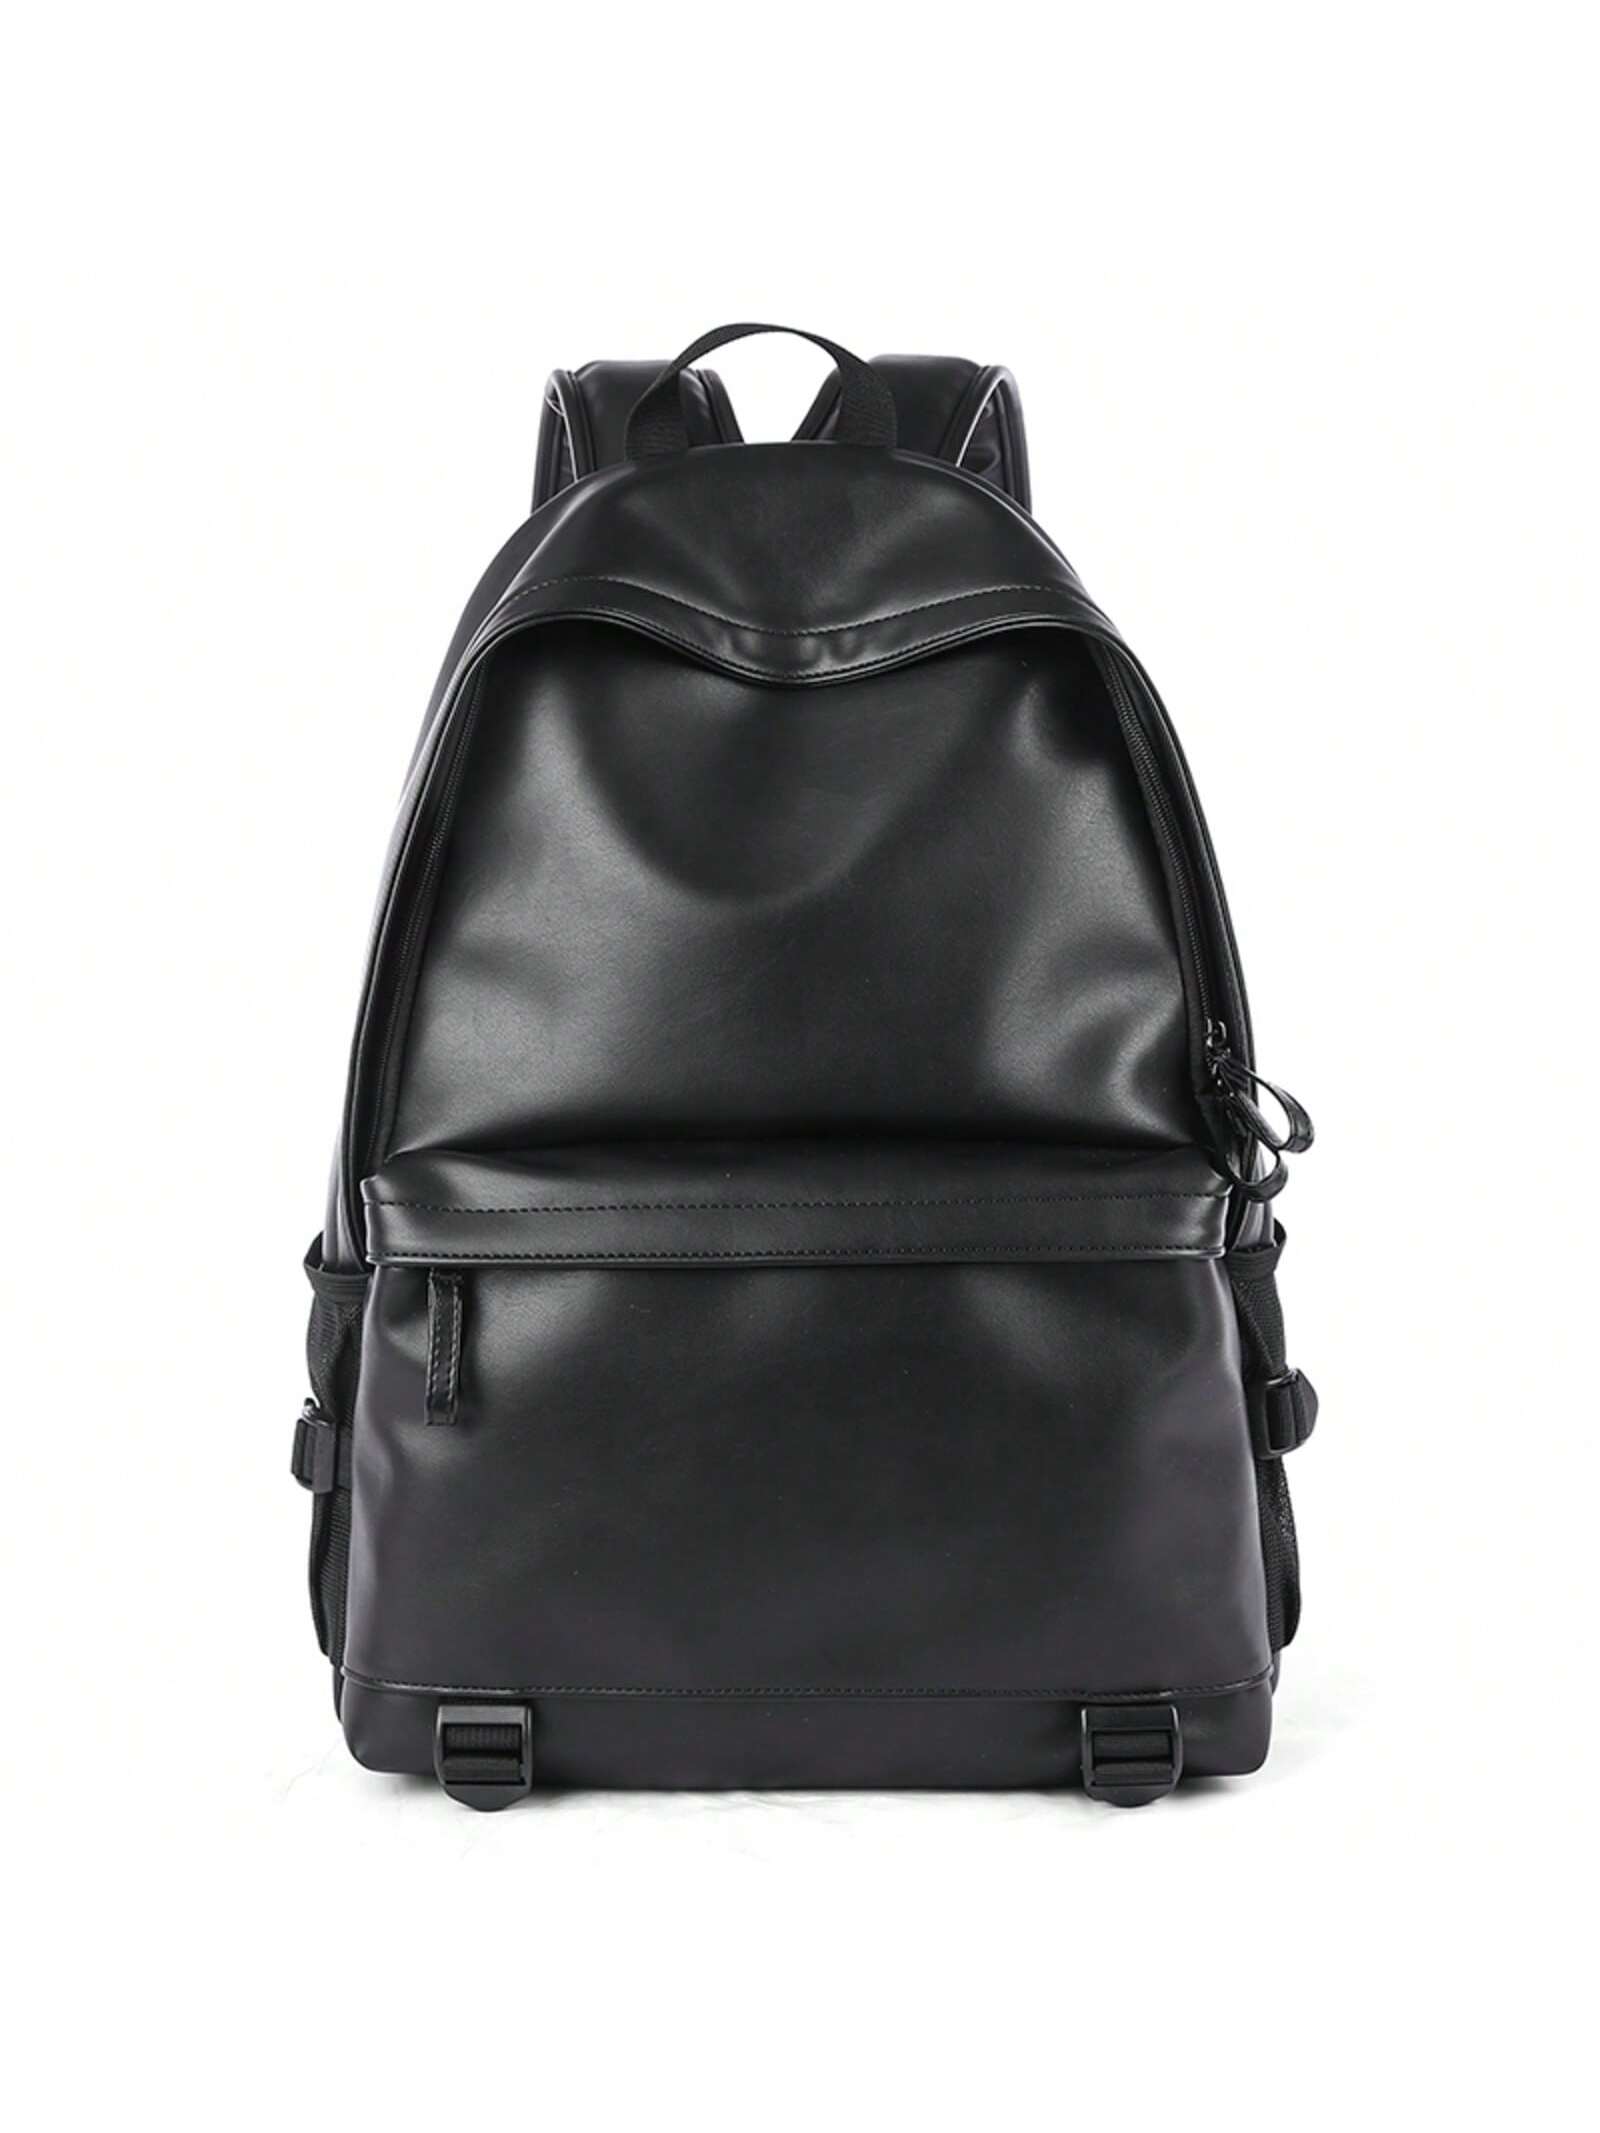 Большой вместительный кожаный рюкзак из ПВХ, черный рюкзак унисекс школьный ранец на плечо для подростков водонепроницаемая сумка для книг студенческий рюкзак дорожная сумка для ноутбука